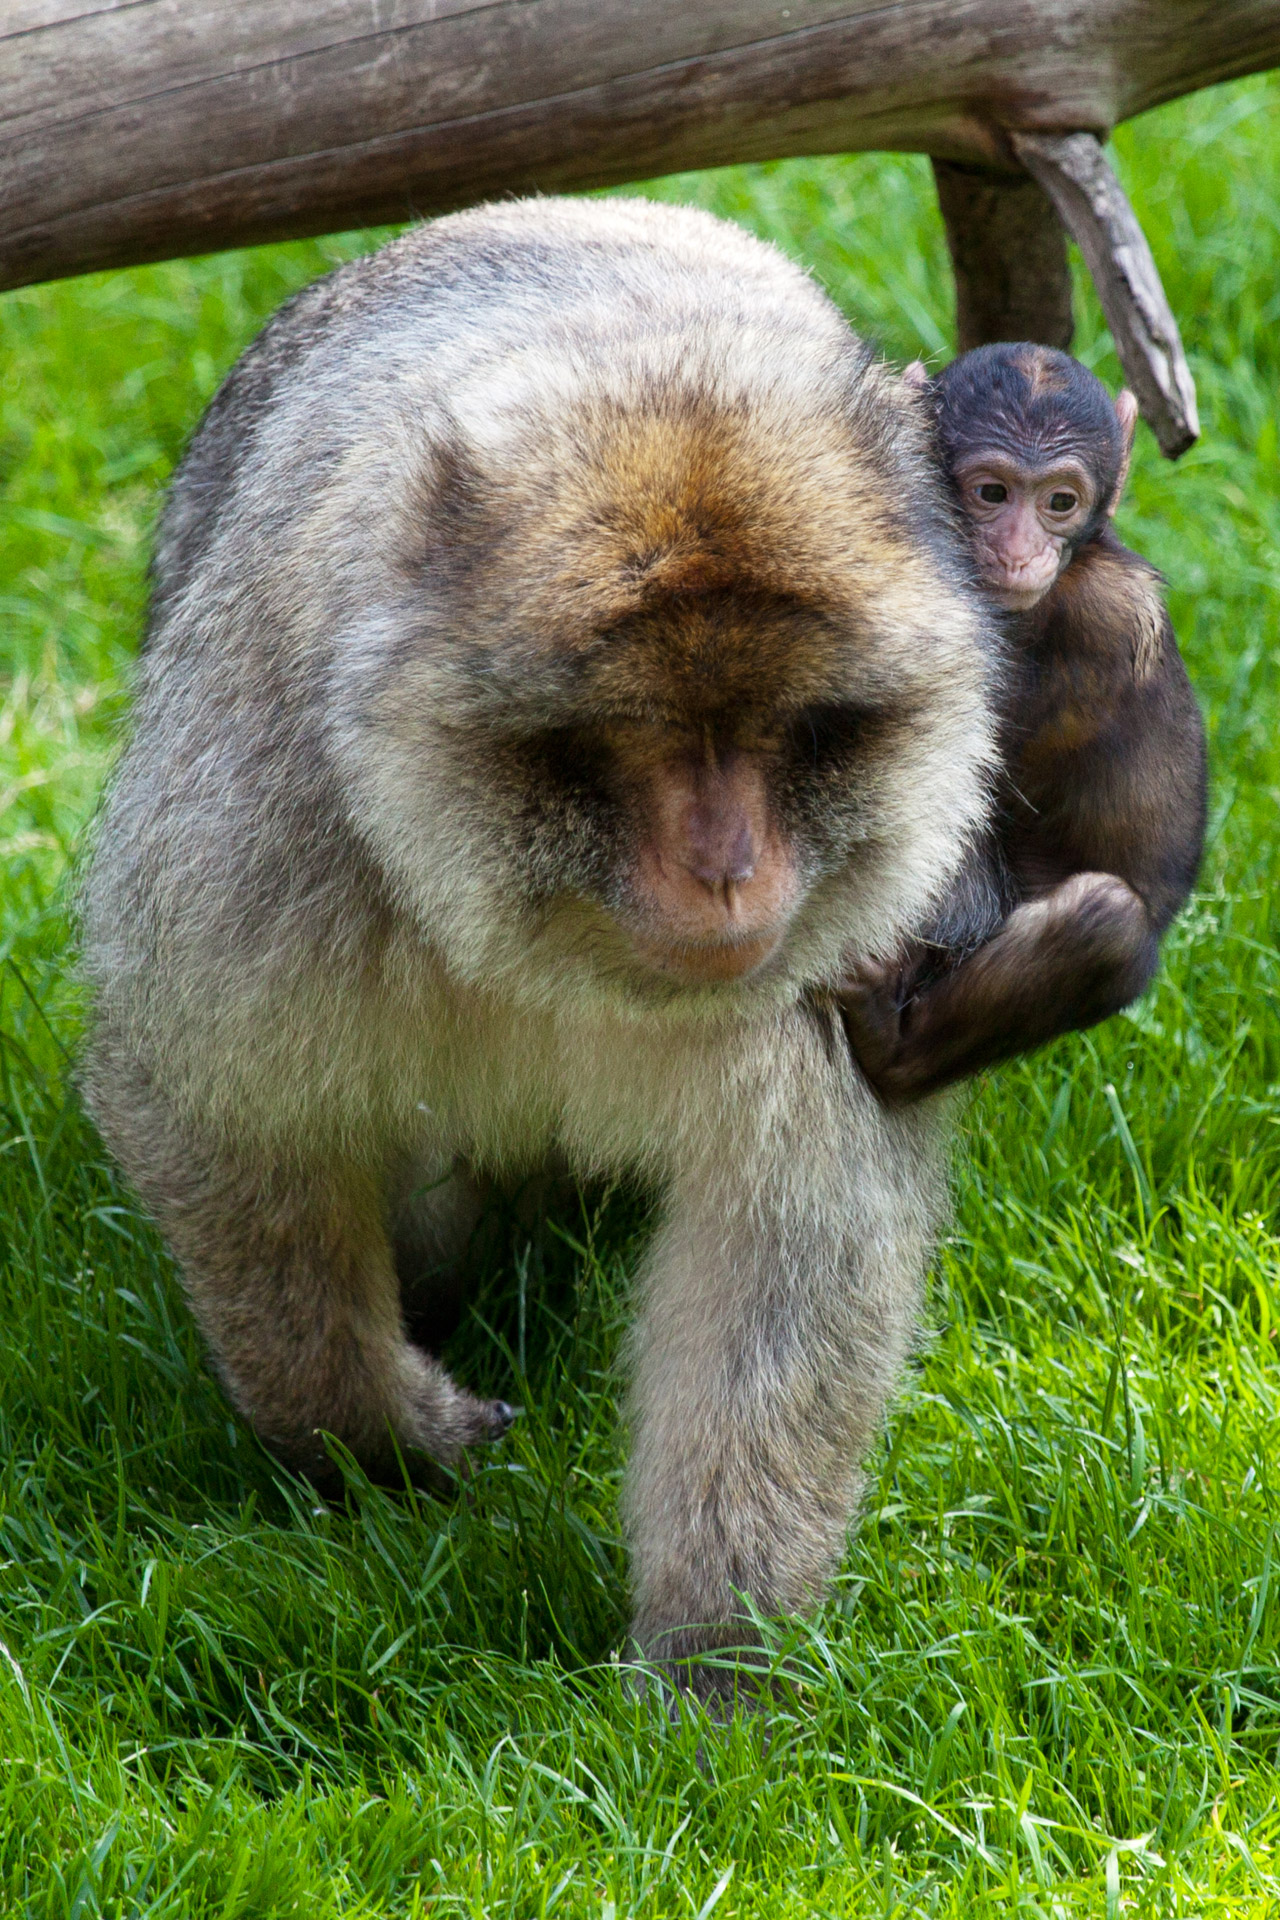 Baby Monkey Holding Mom